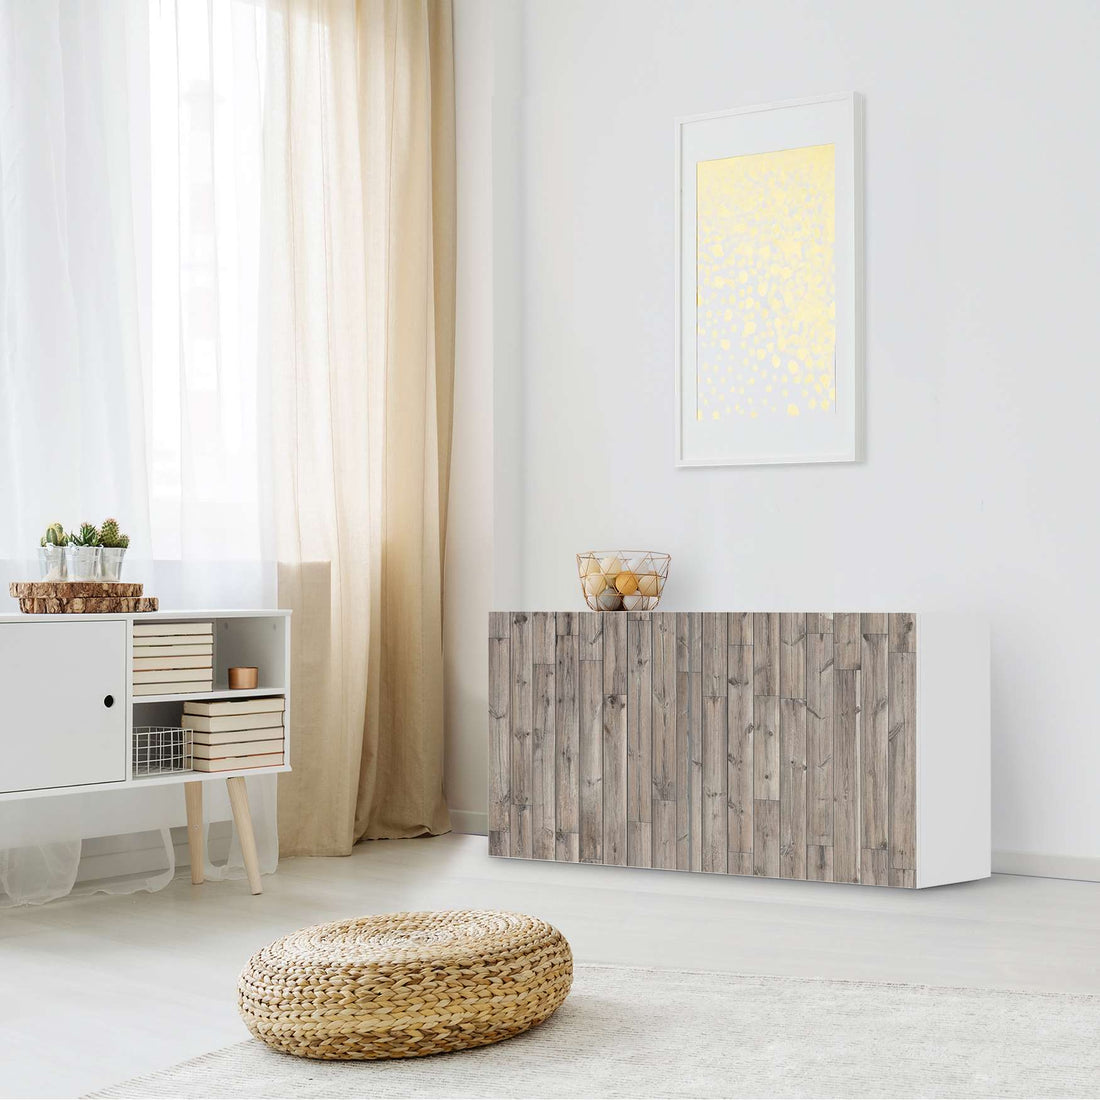 Folie für Möbel Dark washed - IKEA Besta Regal Quer 2 Türen - Wohnzimmer